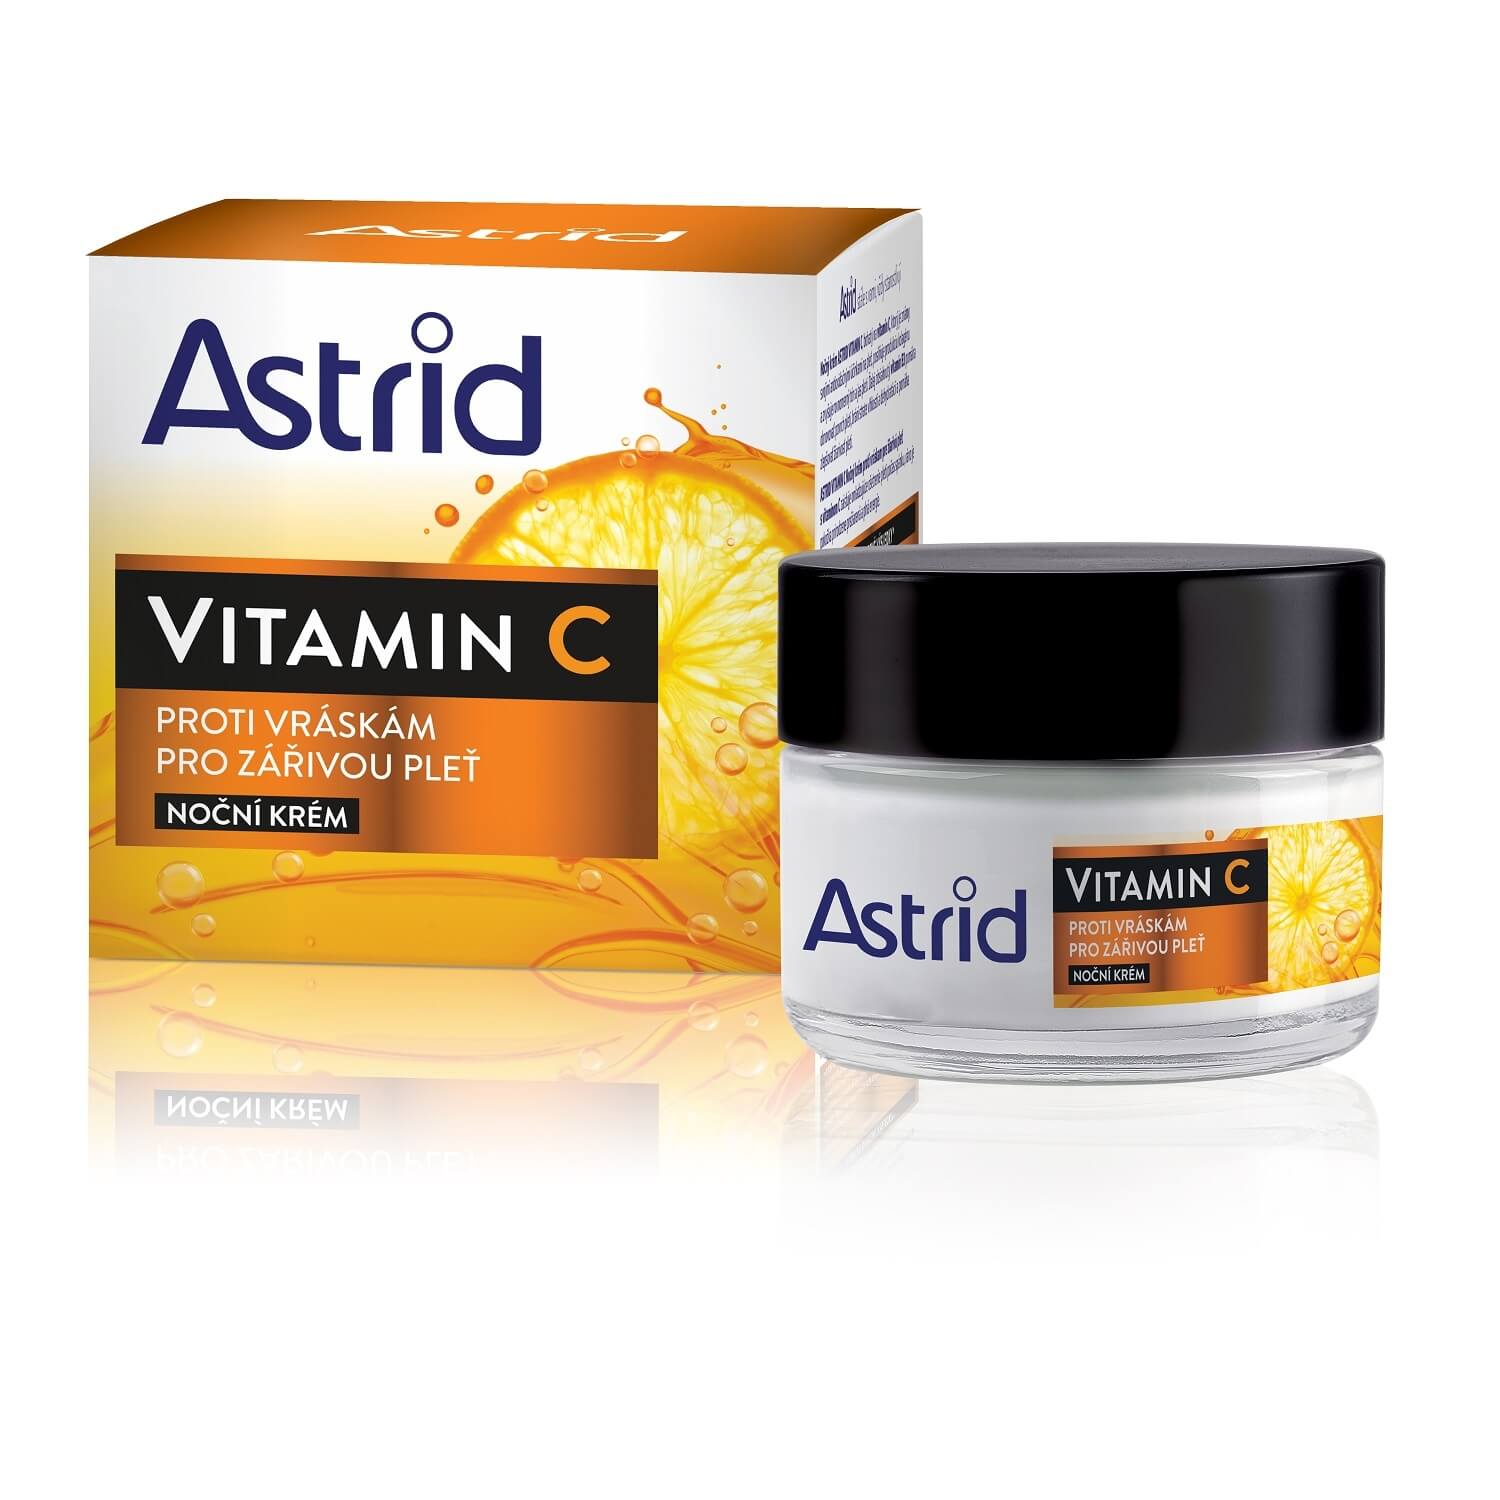 Astrid Noční krém proti vráskám pro zářivou pleť Vitamin C 50 ml